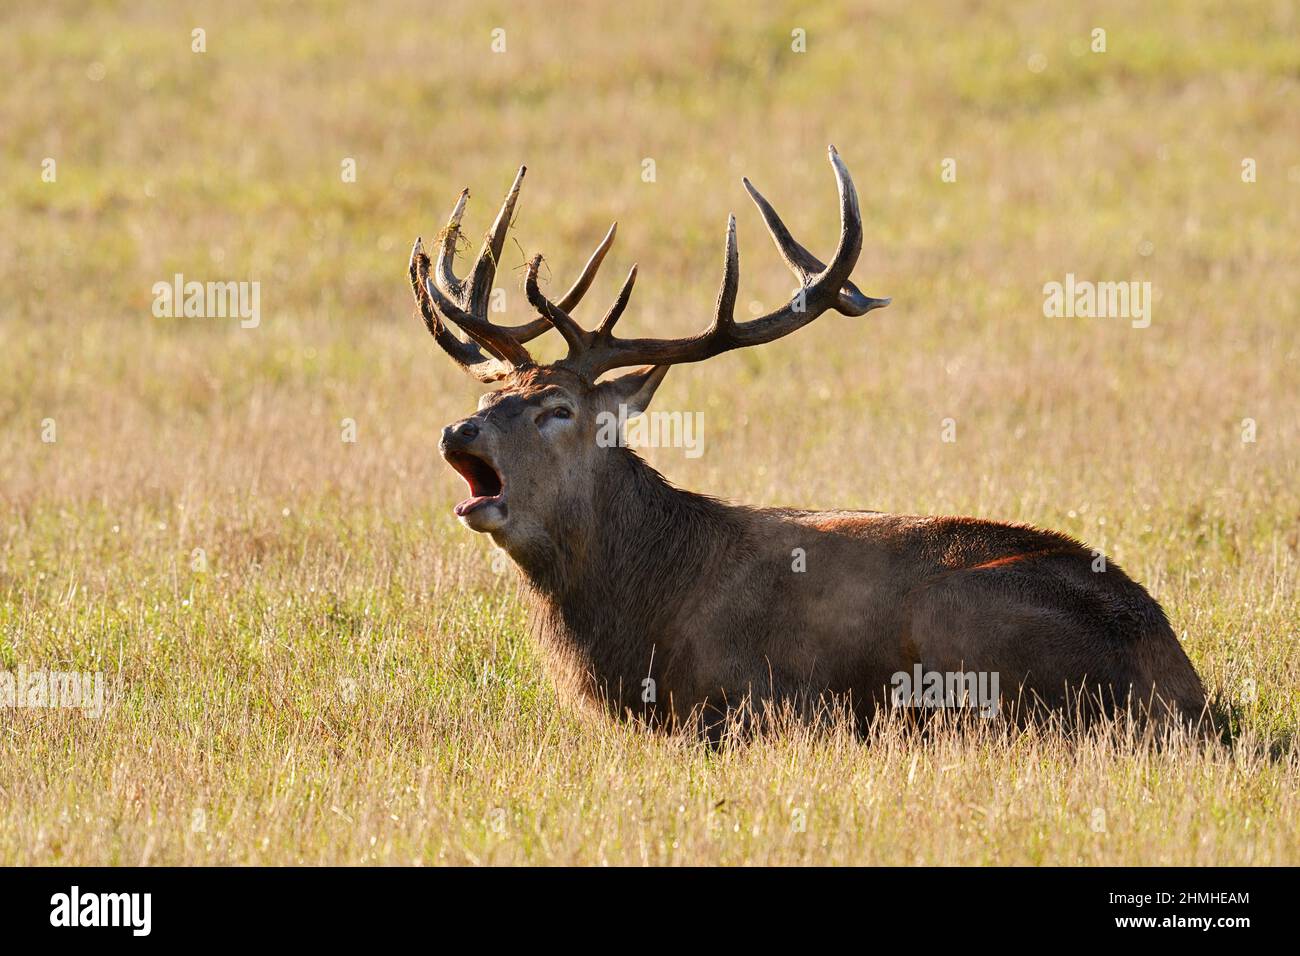 Red deer (Cervus elaphus), lying, bellowing, rutting season, North Rhine-Westphalia, Germany Stock Photo